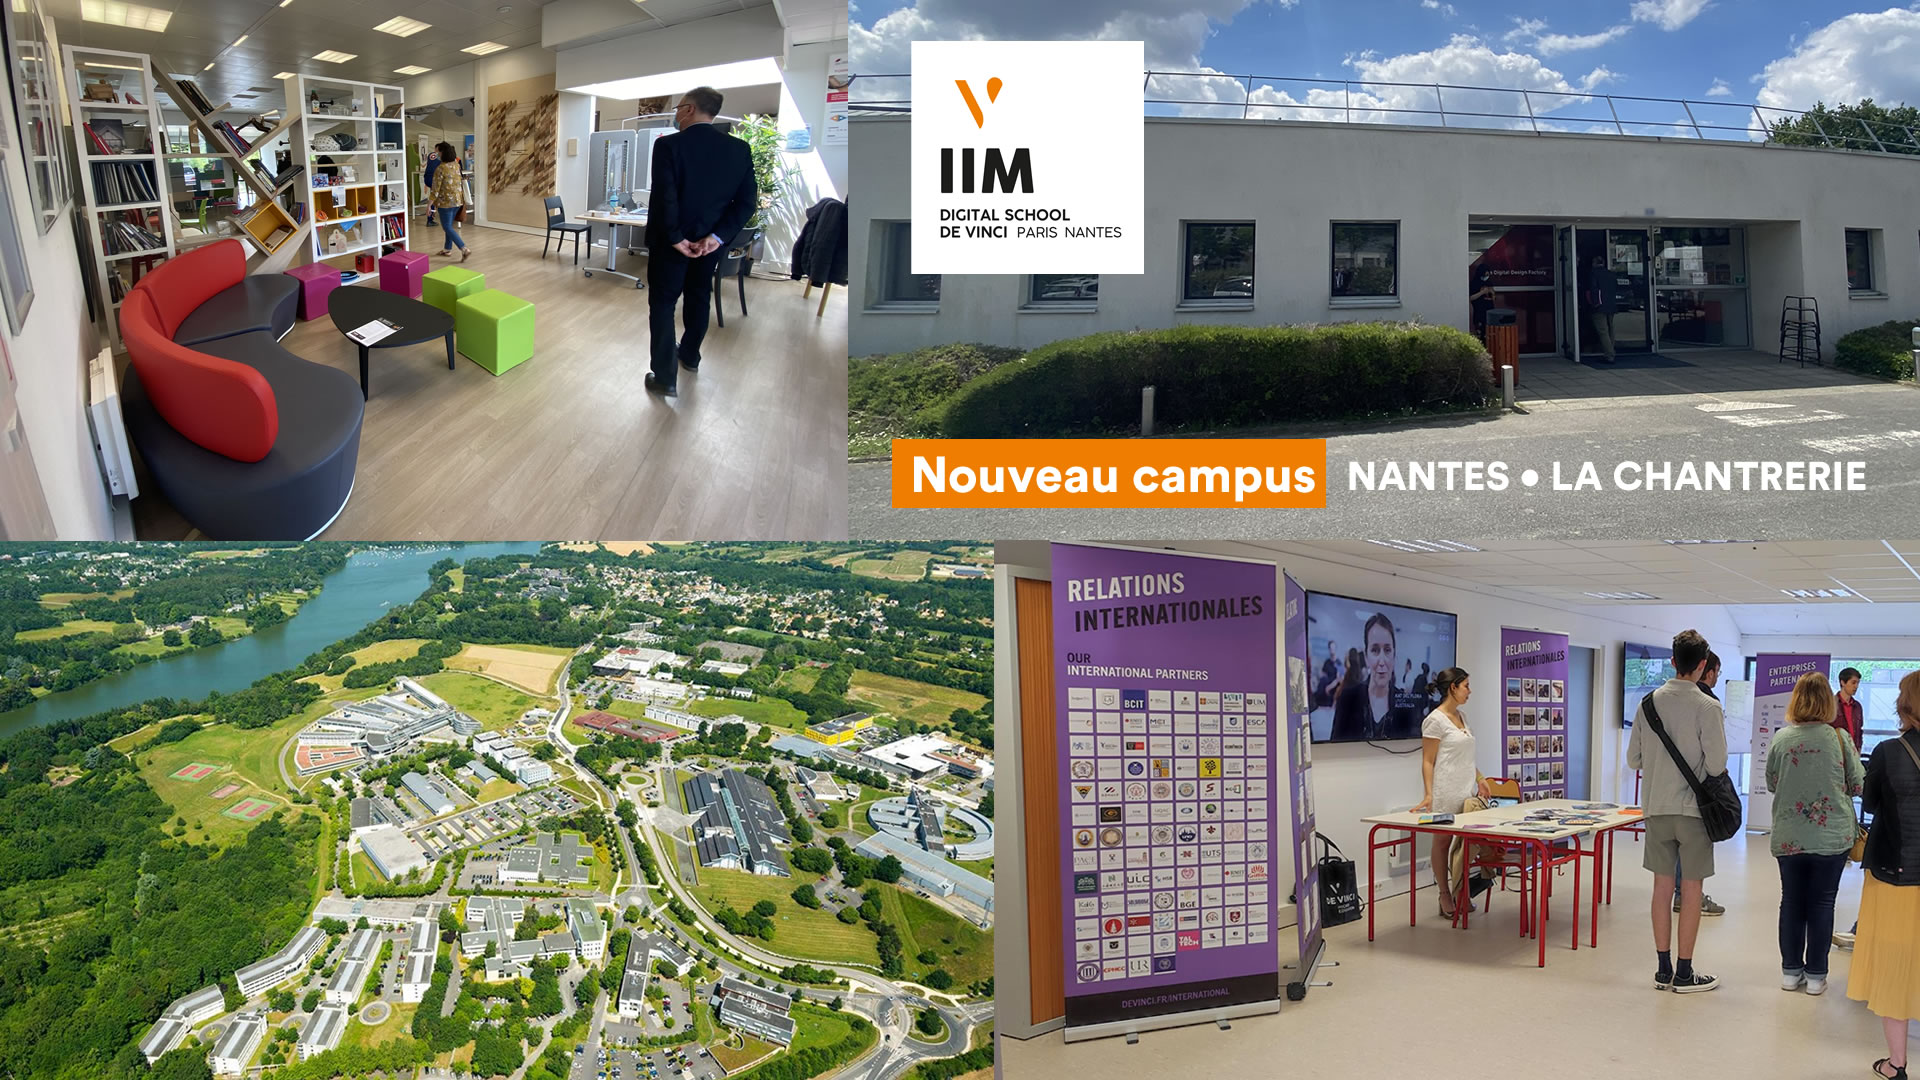 iim campus nantes - Campus de Nantes